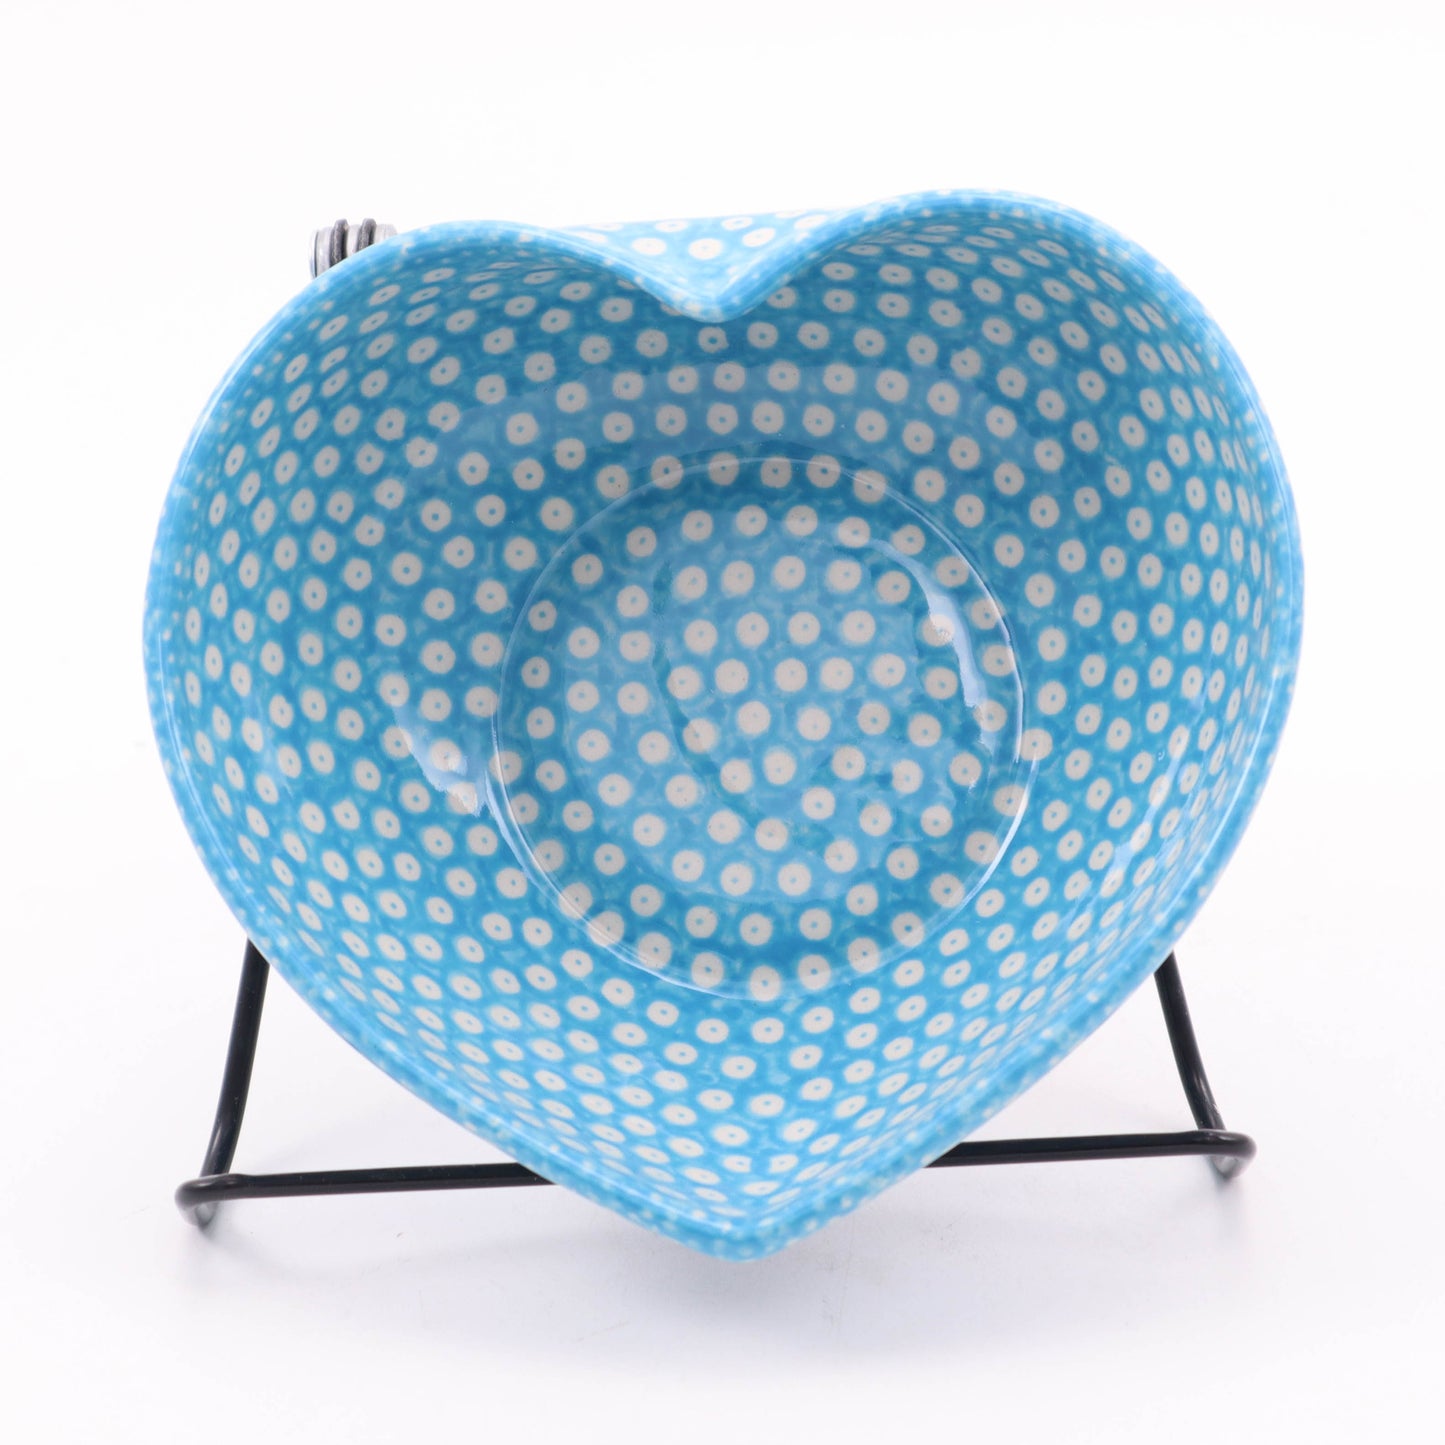 5"x6" Heart Bowl. Pattern: Aqua